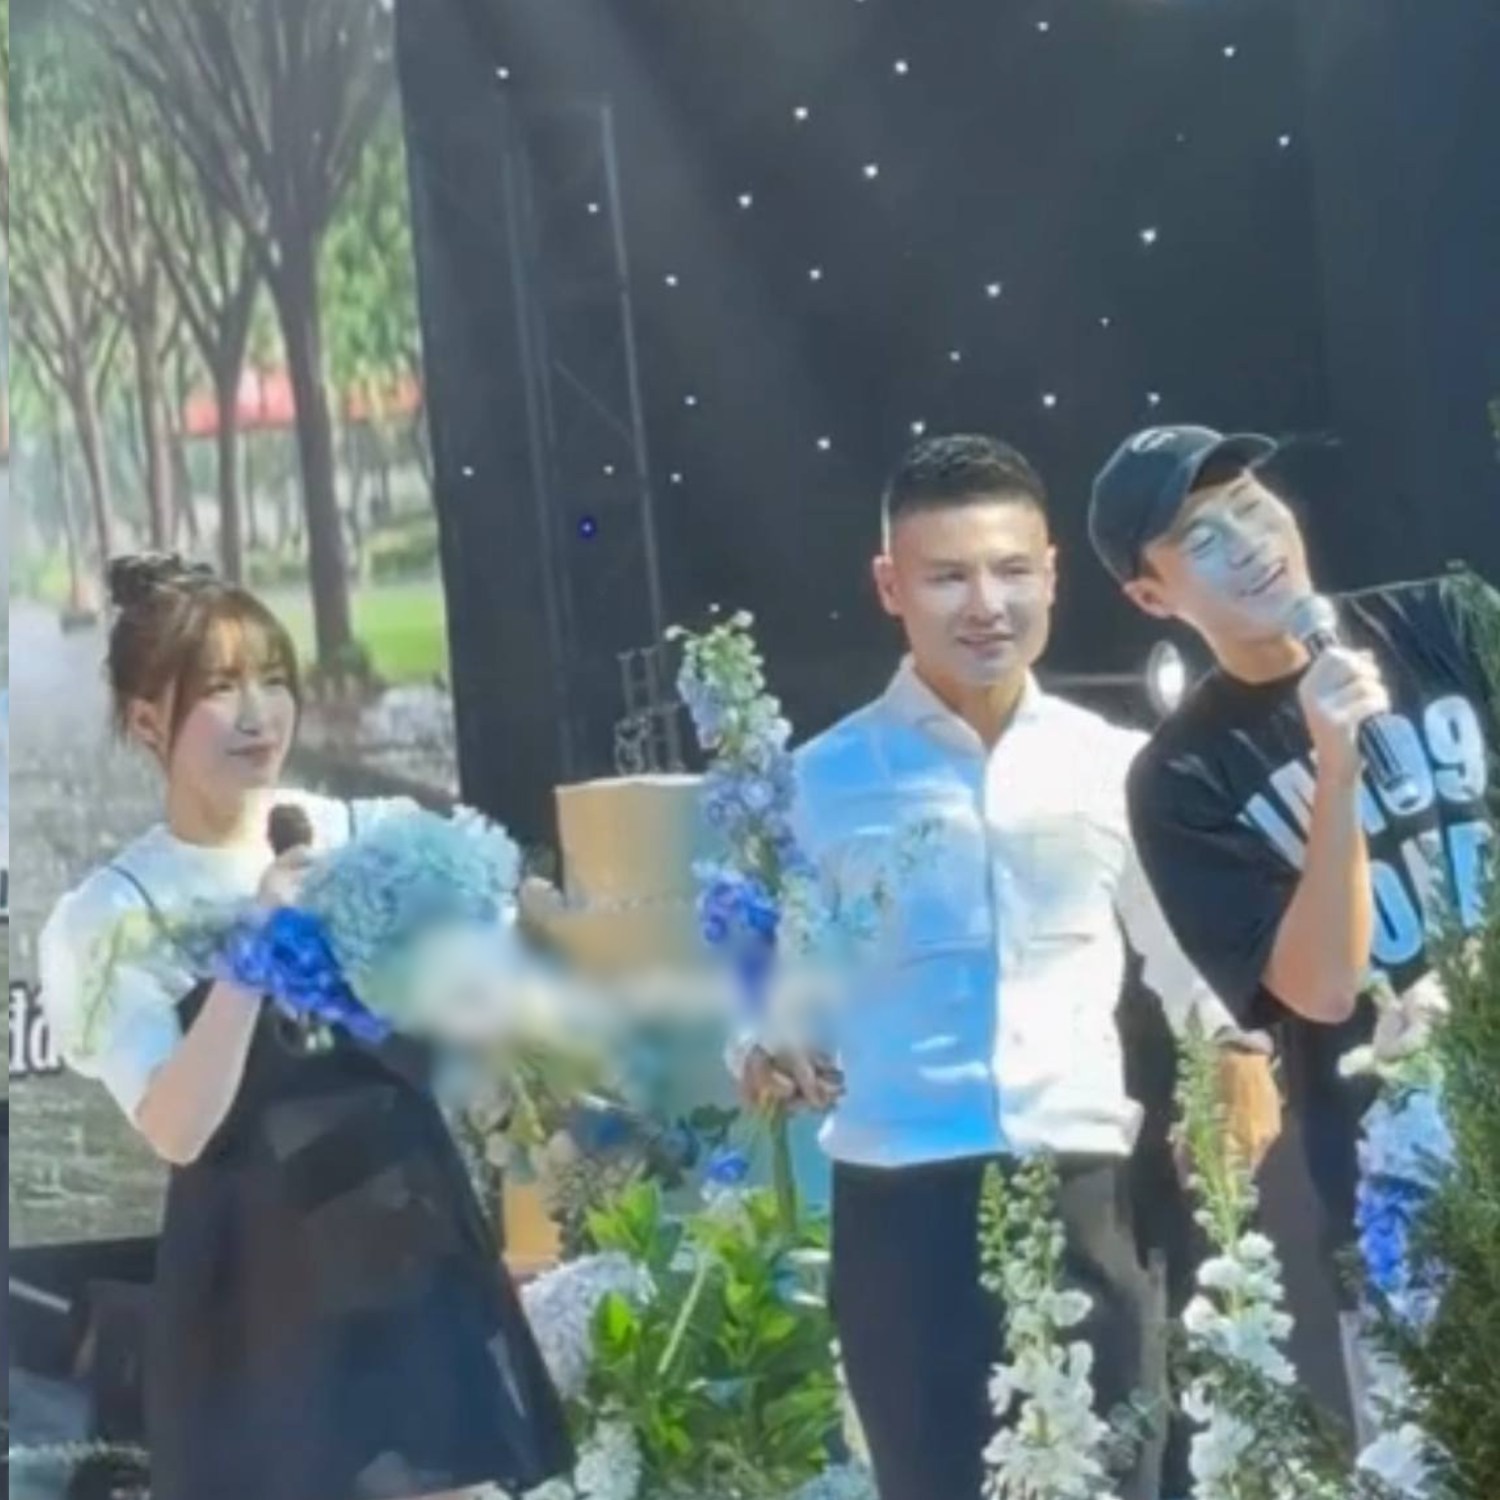 Hòa Minzy - Văn Toàn cùng đến trễ đám cưới Quang Hải, còn song ca với nhau: Netizen bảo 'yêu đi' - ảnh 1